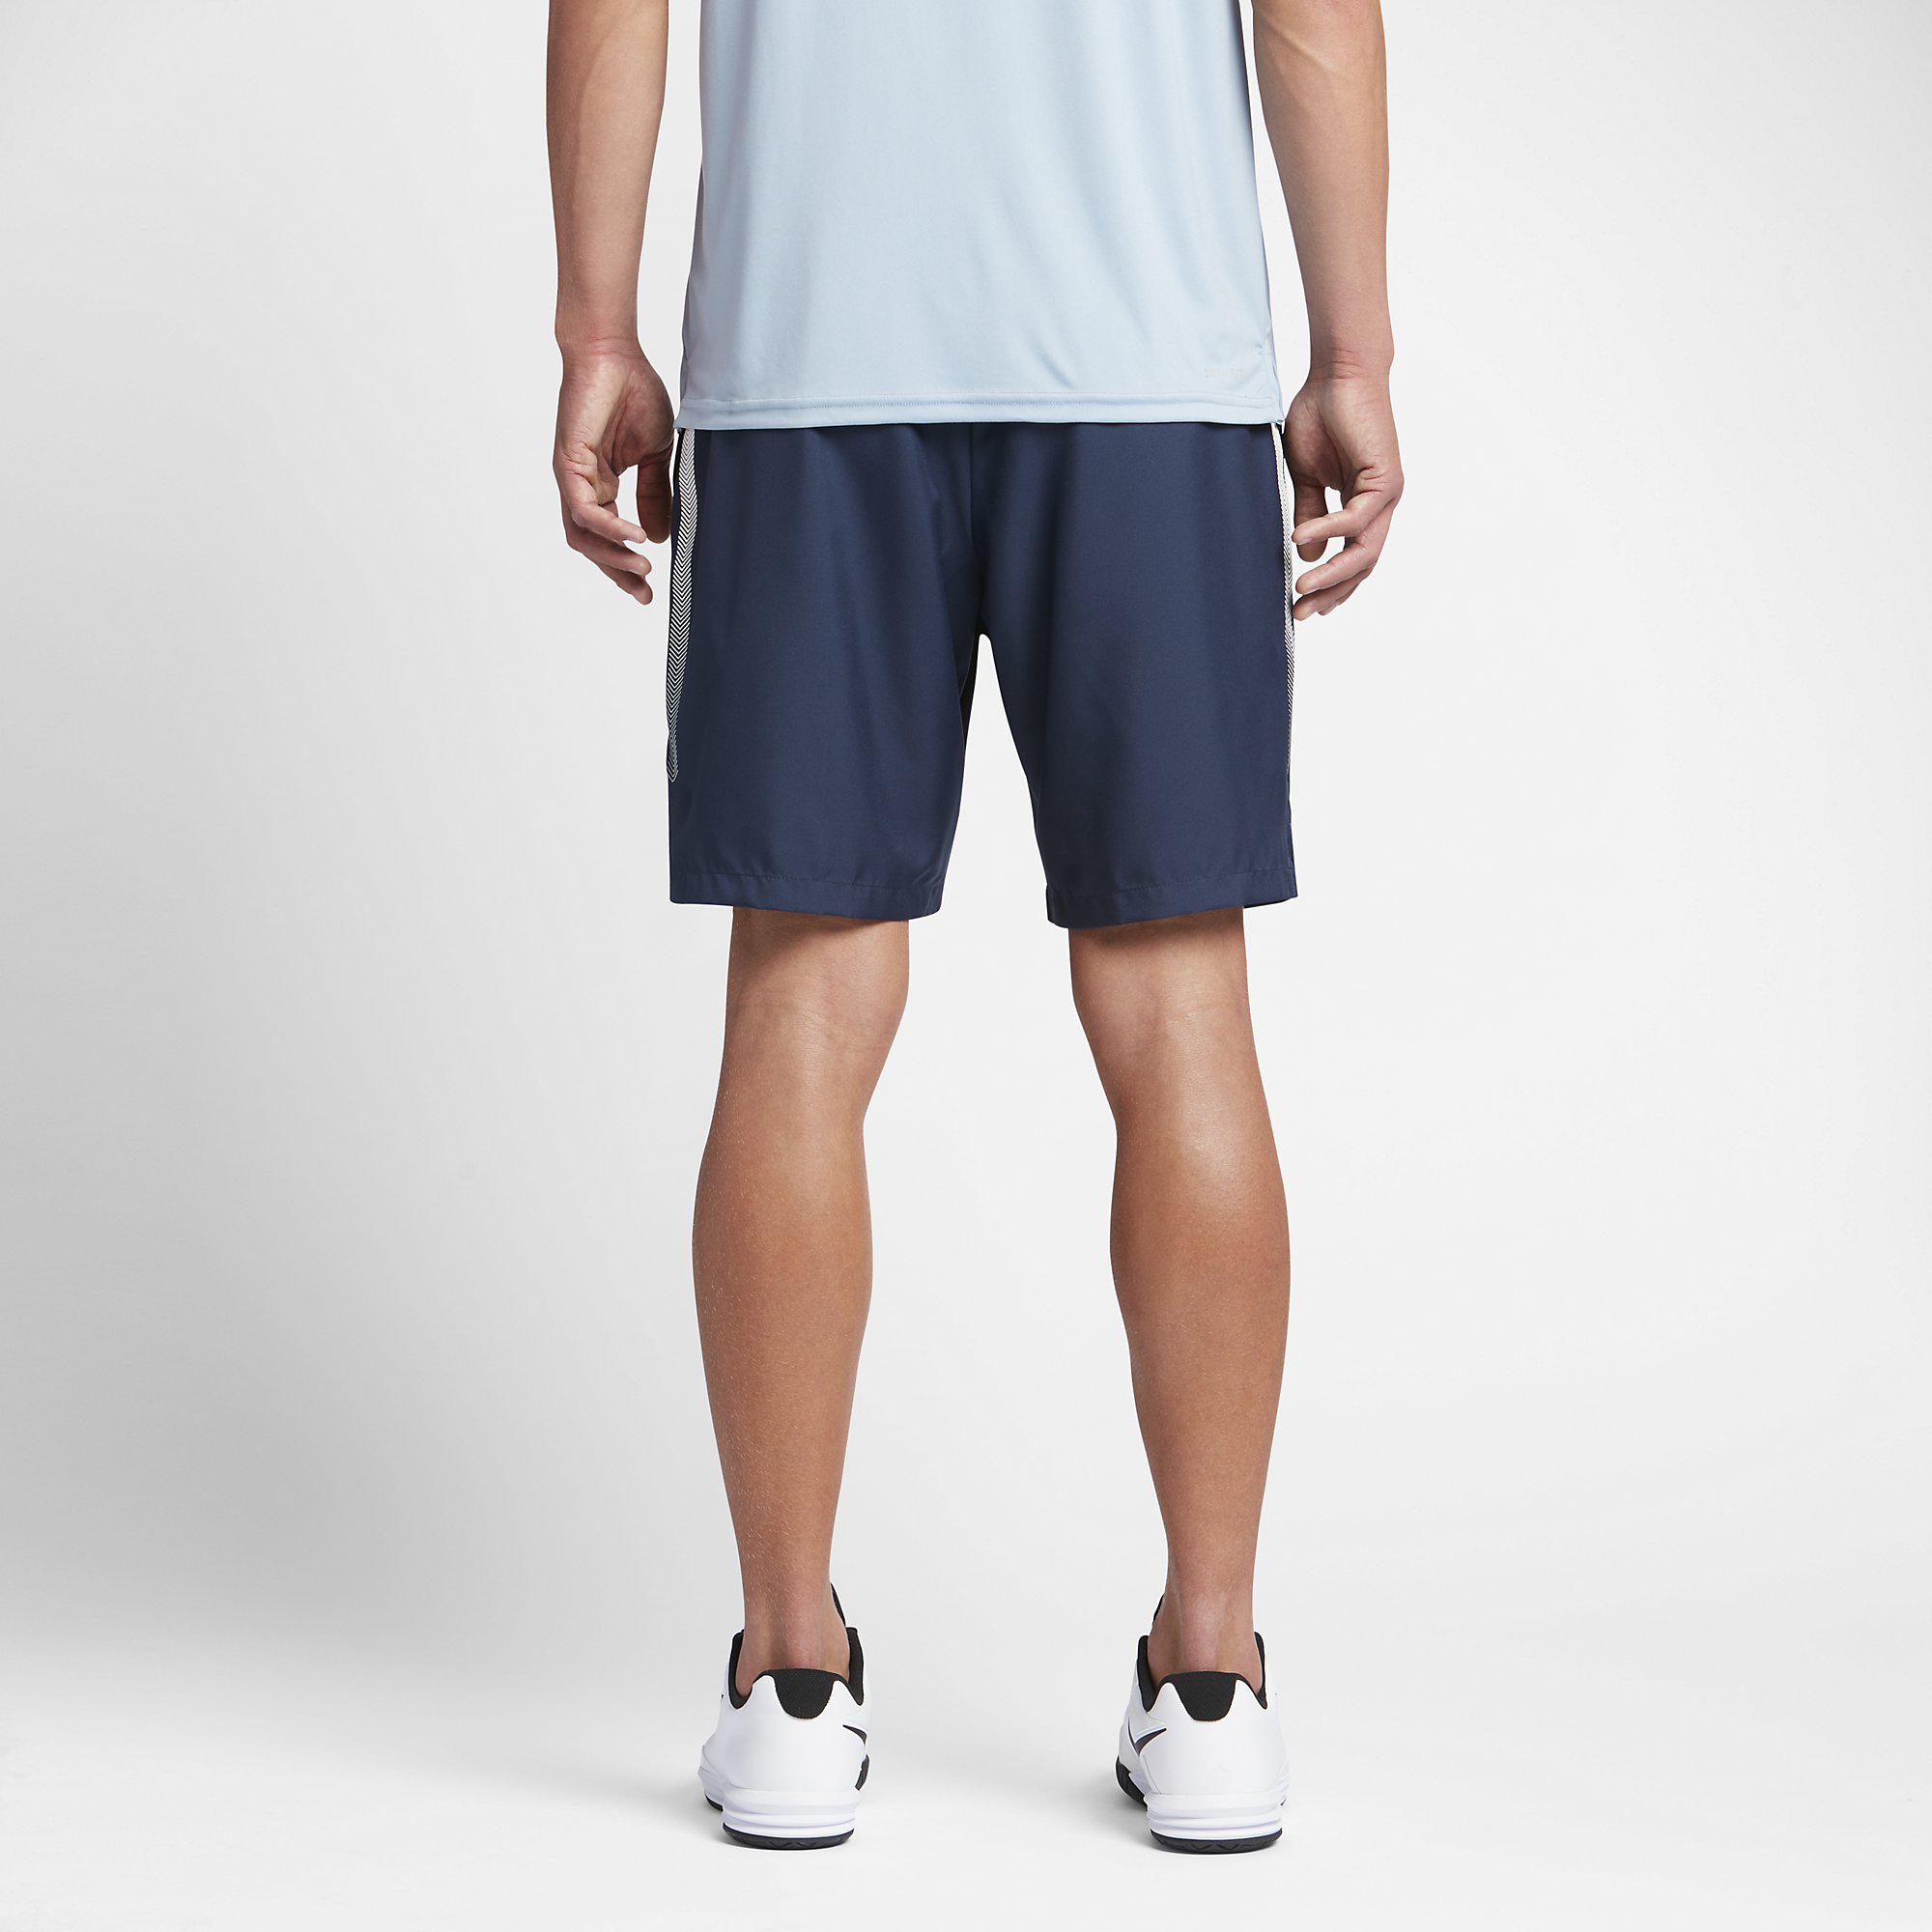 Nike Mens Dry 9 Inch Tennis Shorts - Midnight Navy - Tennisnuts.com